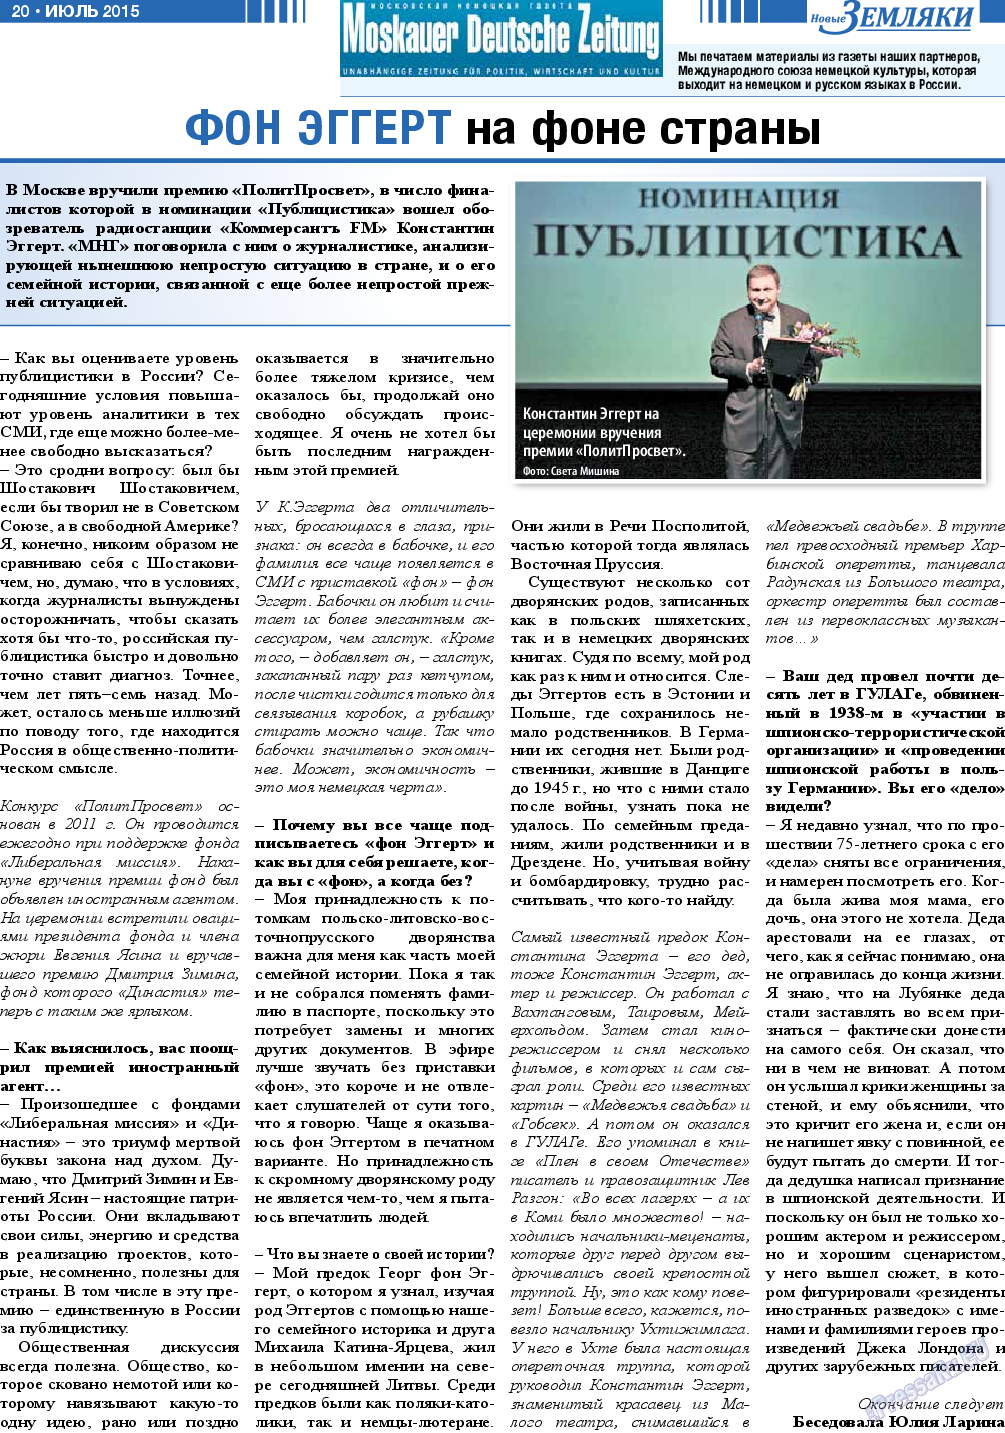 Новые Земляки, газета. 2015 №7 стр.20